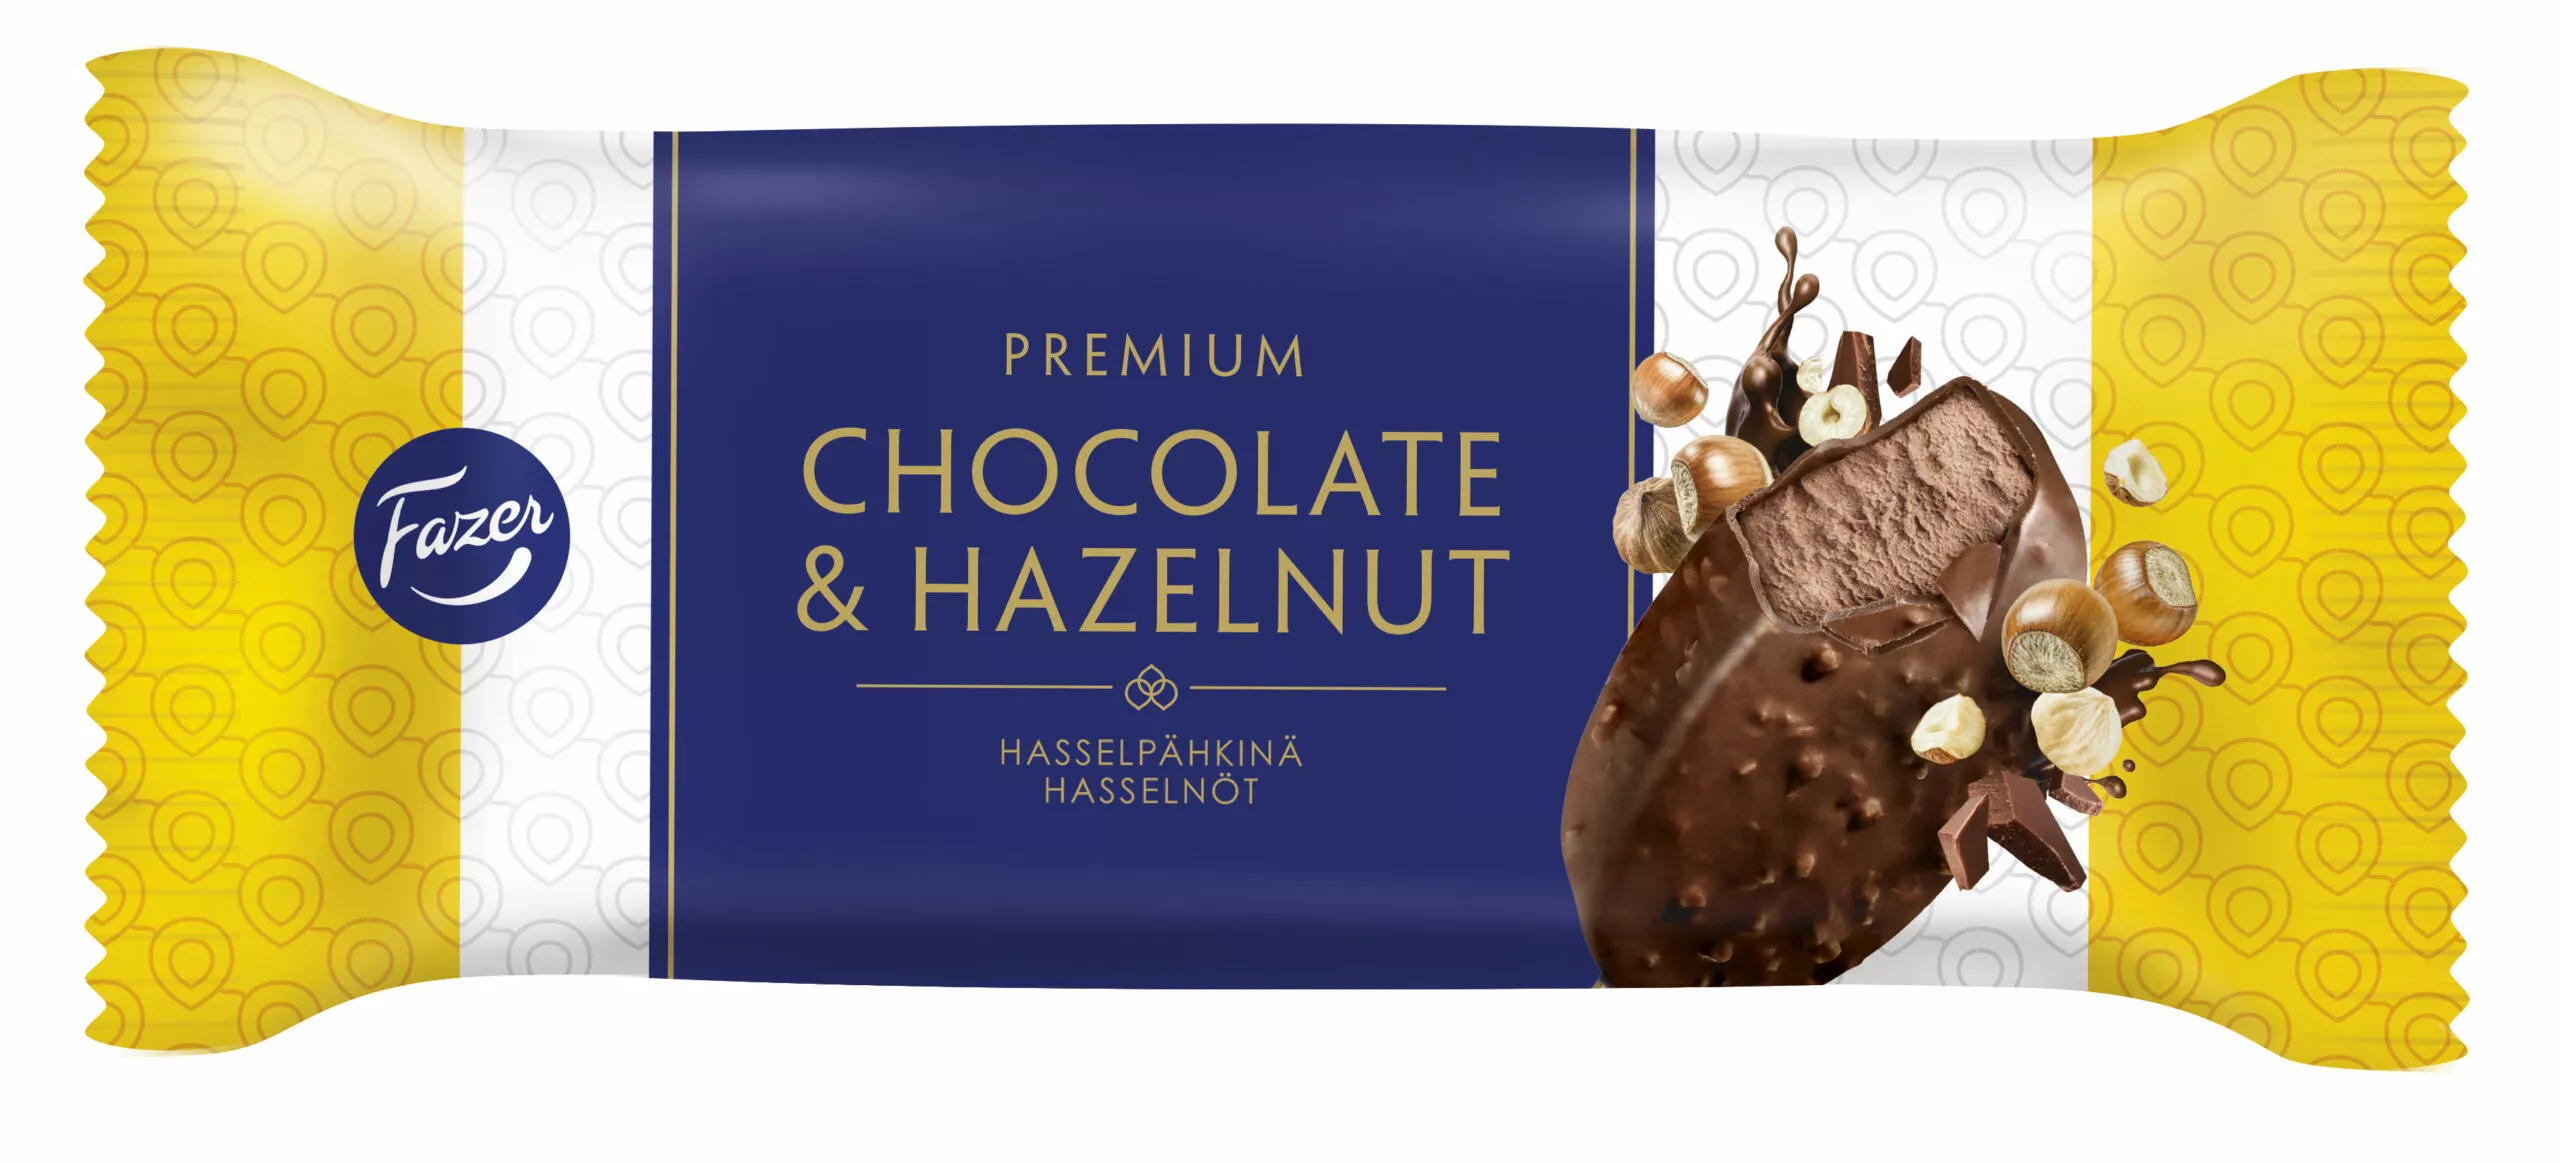 Fazer Premium hasselpähkinä -jäätelön kääre.